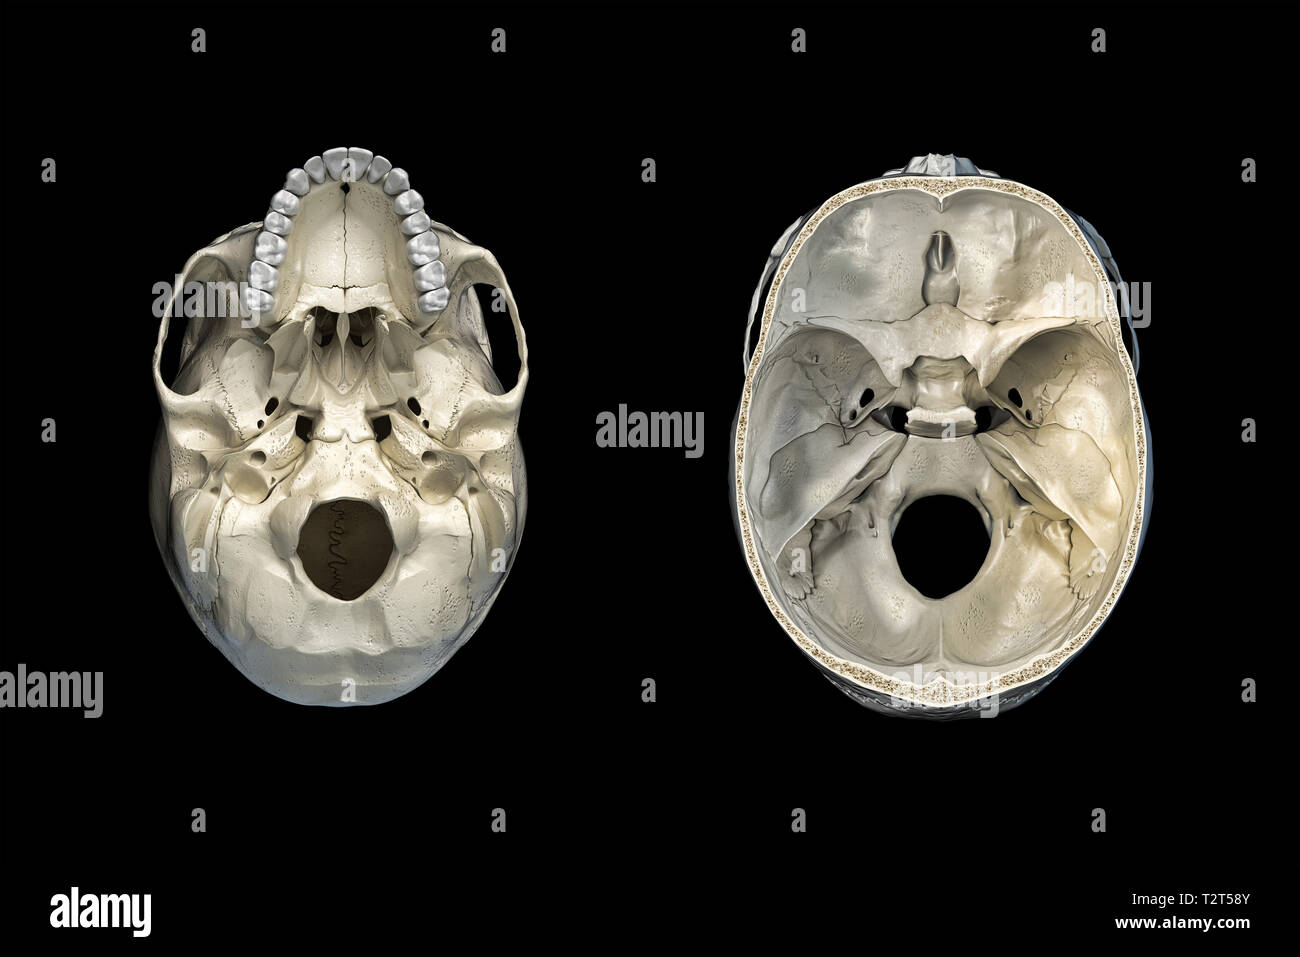 Cranio umano sezione trasversale e una vista dal basso. Su sfondo nero. Foto Stock